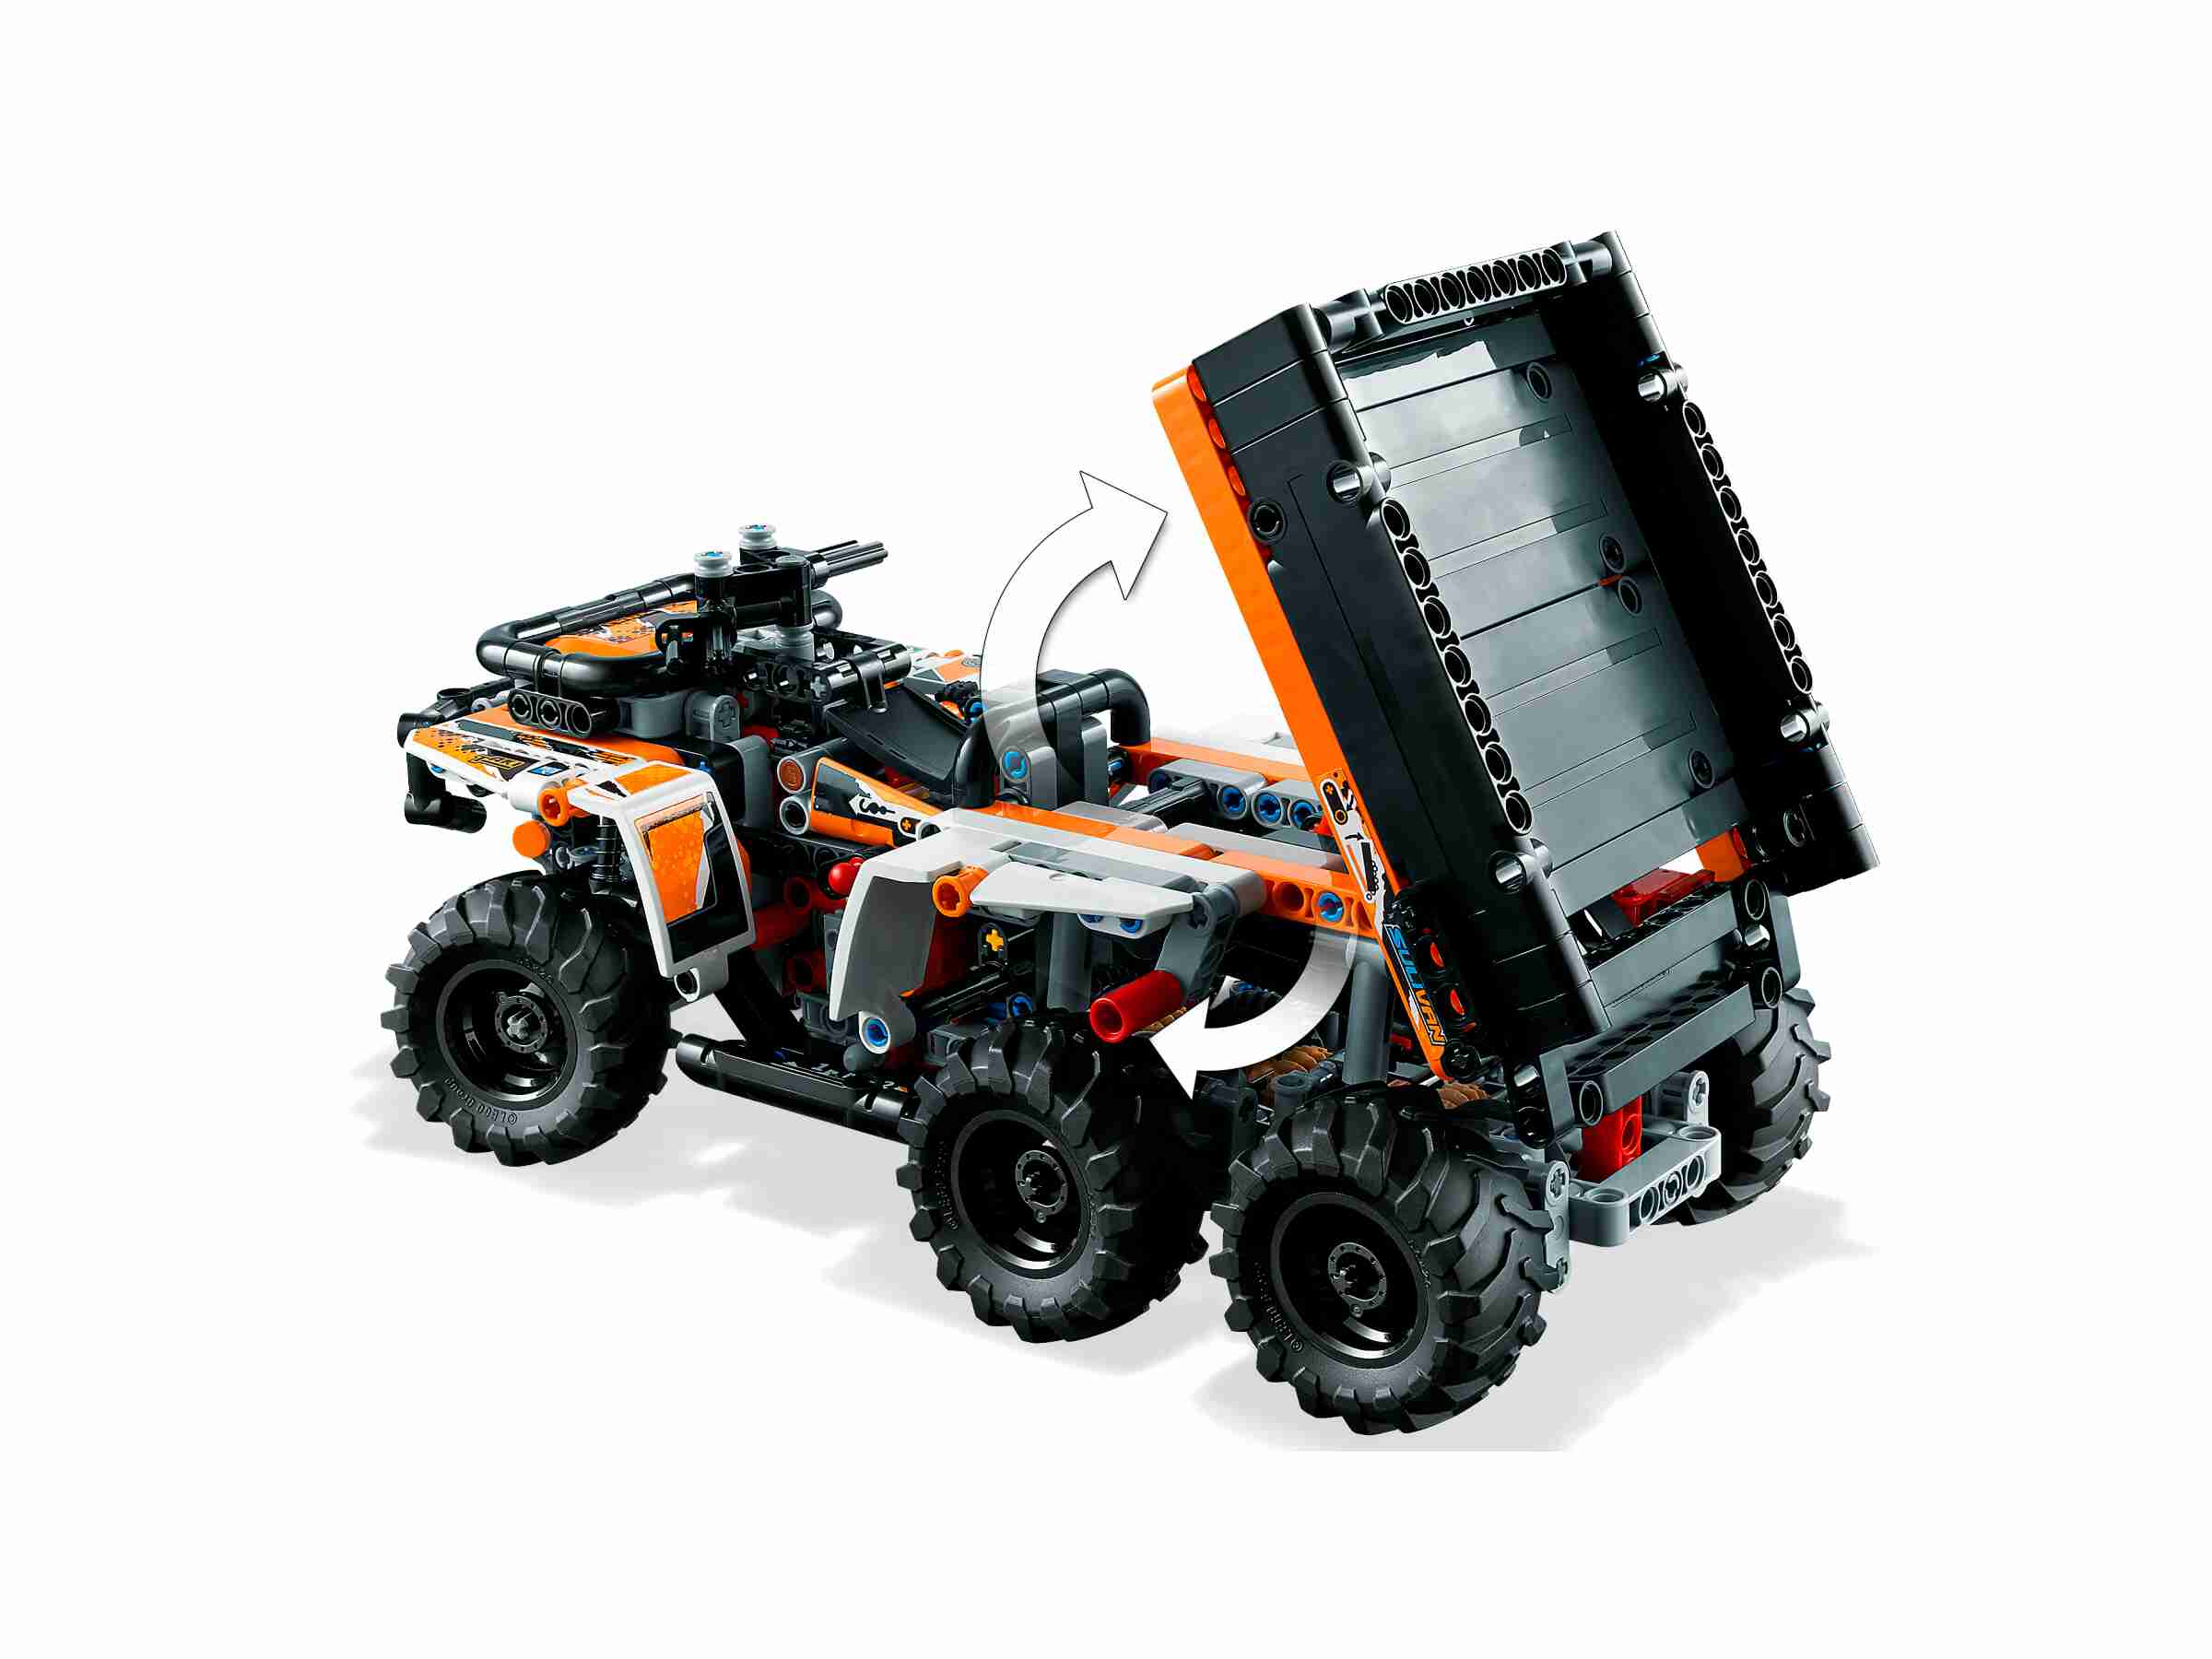 LEGO 42139 Technic Geländefahrzeug, 6 Räder, Spielzeug-Kettensäge